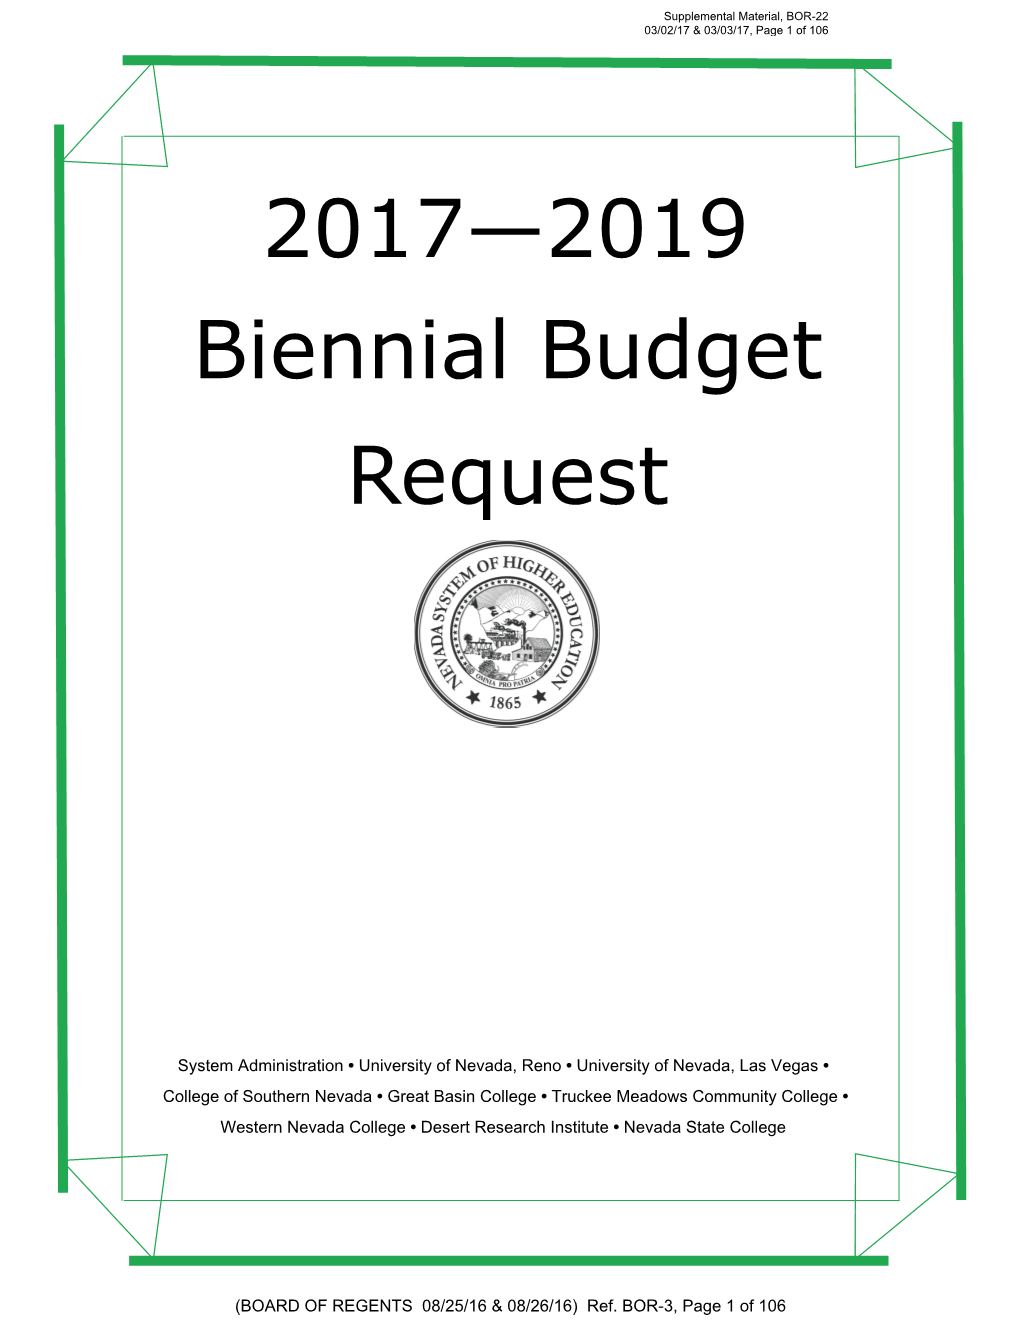 2017—2019 Biennial Budget Request